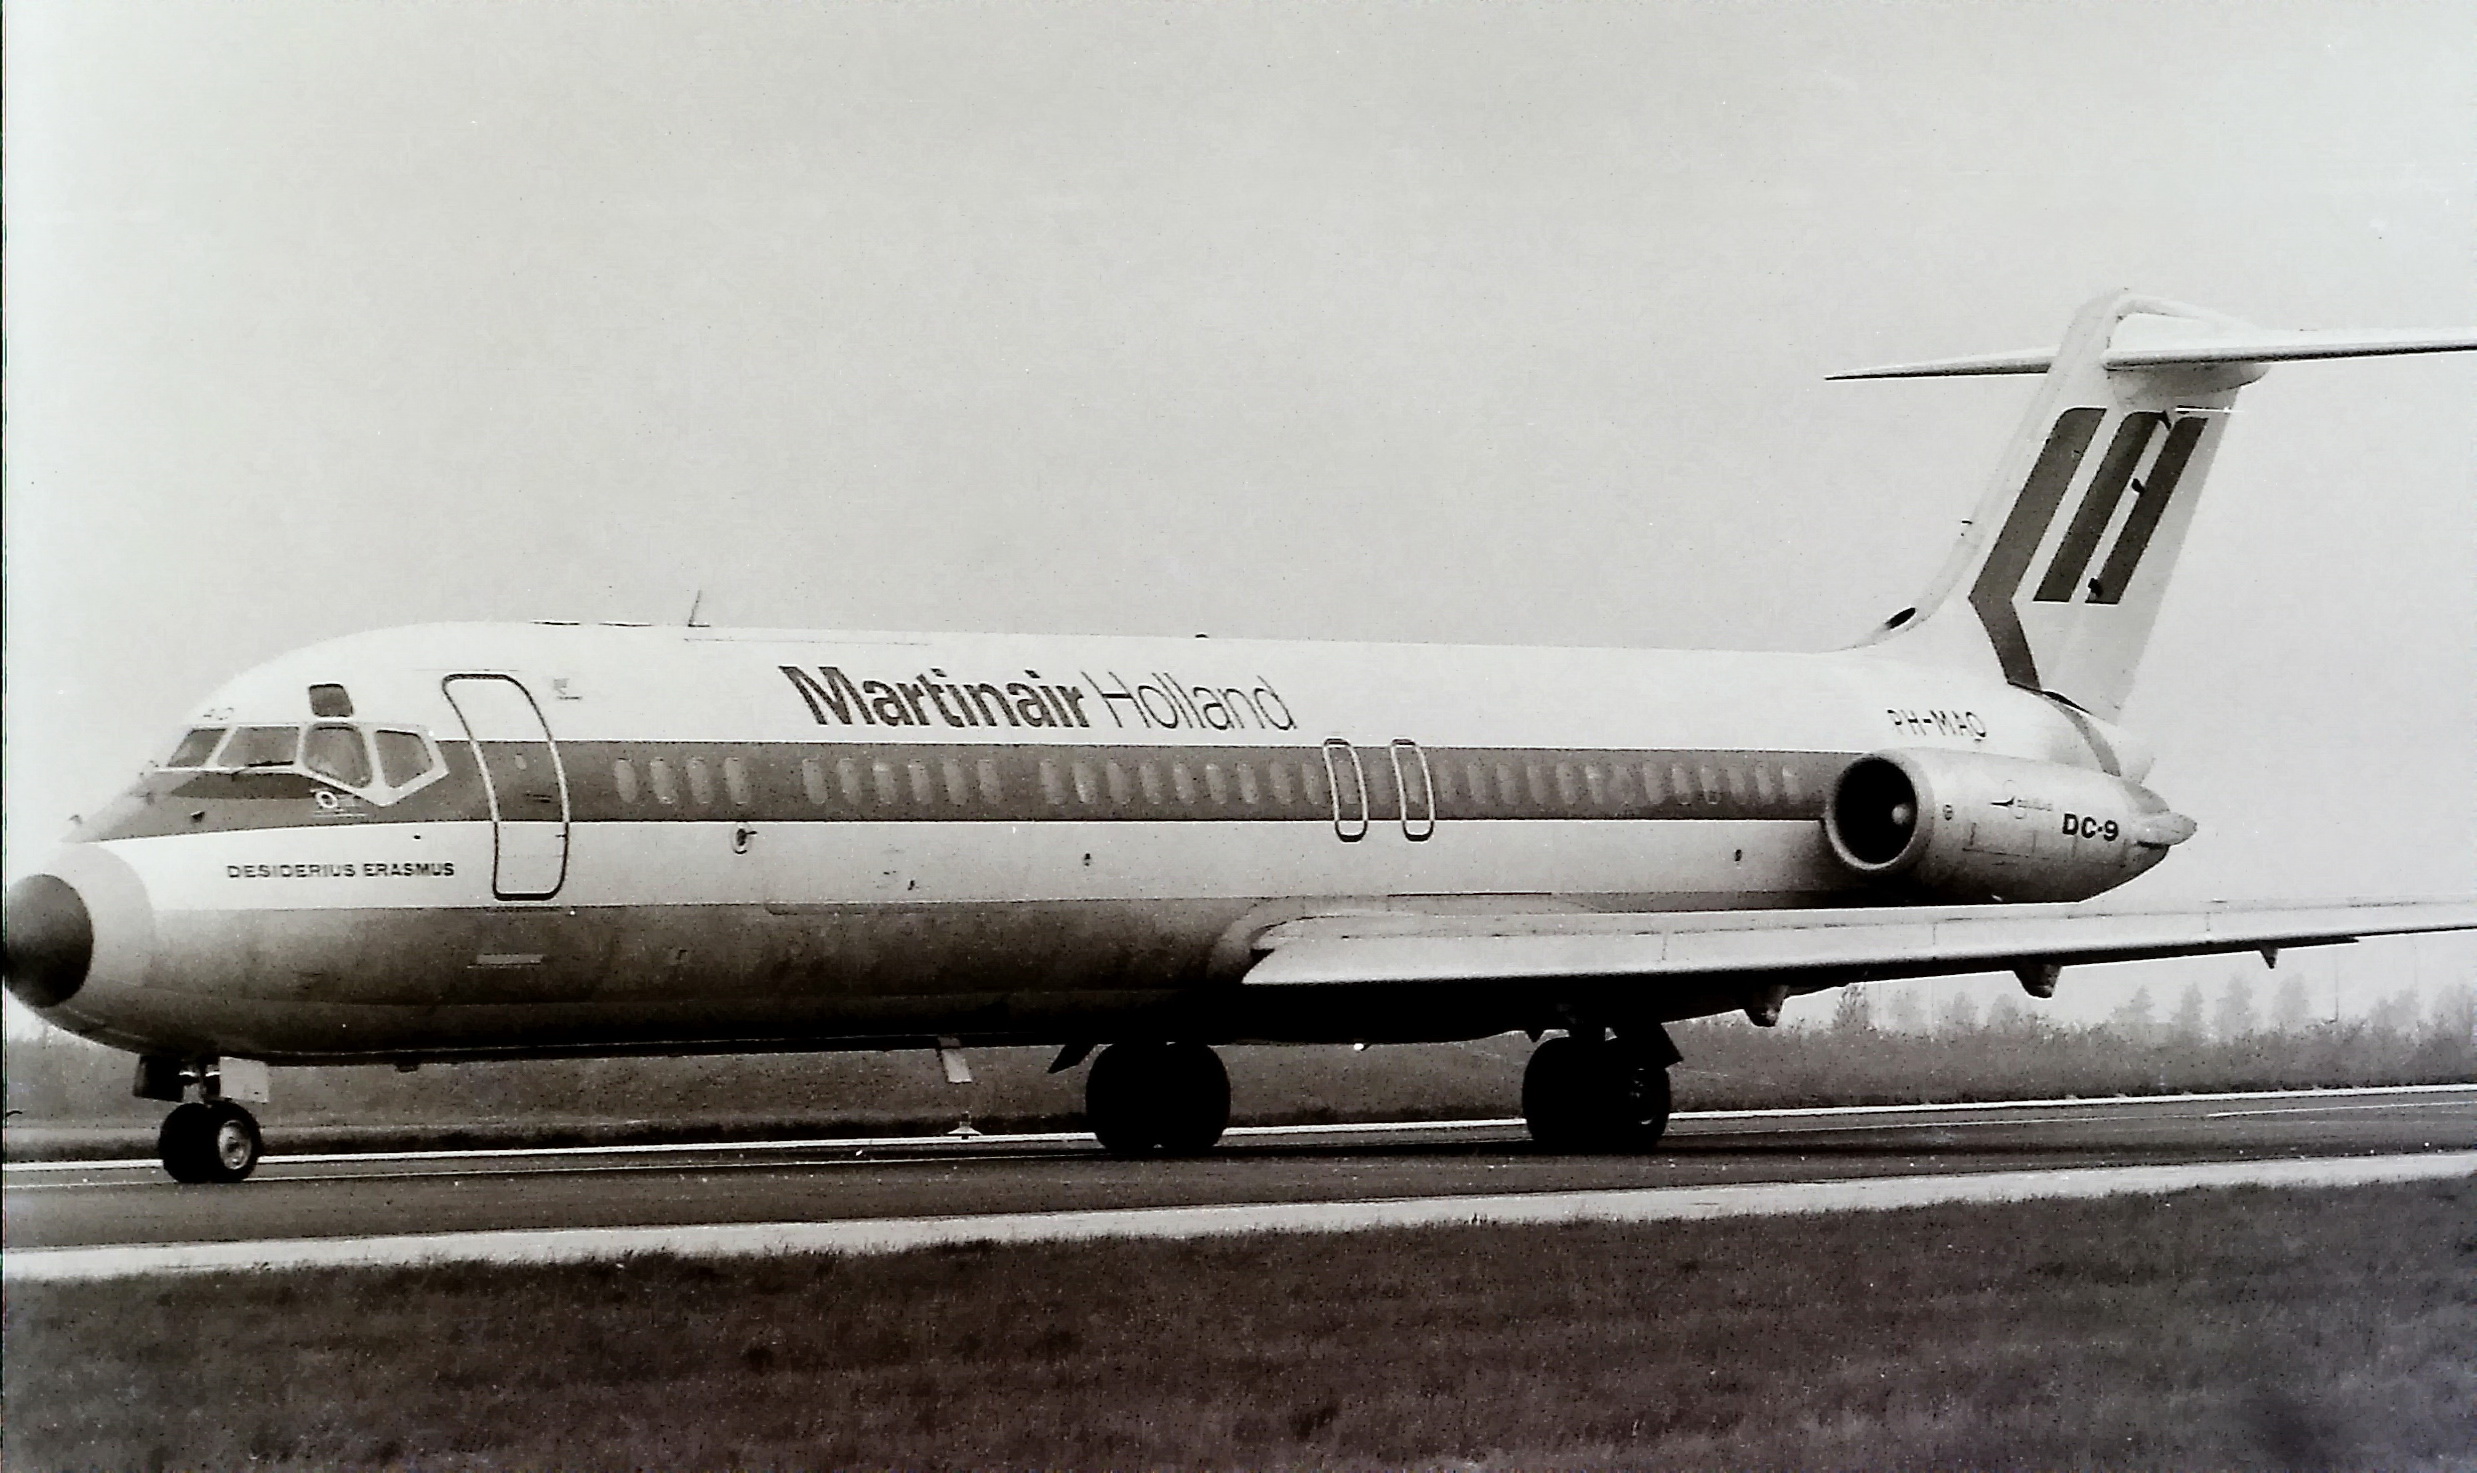 DC-9 Martinair